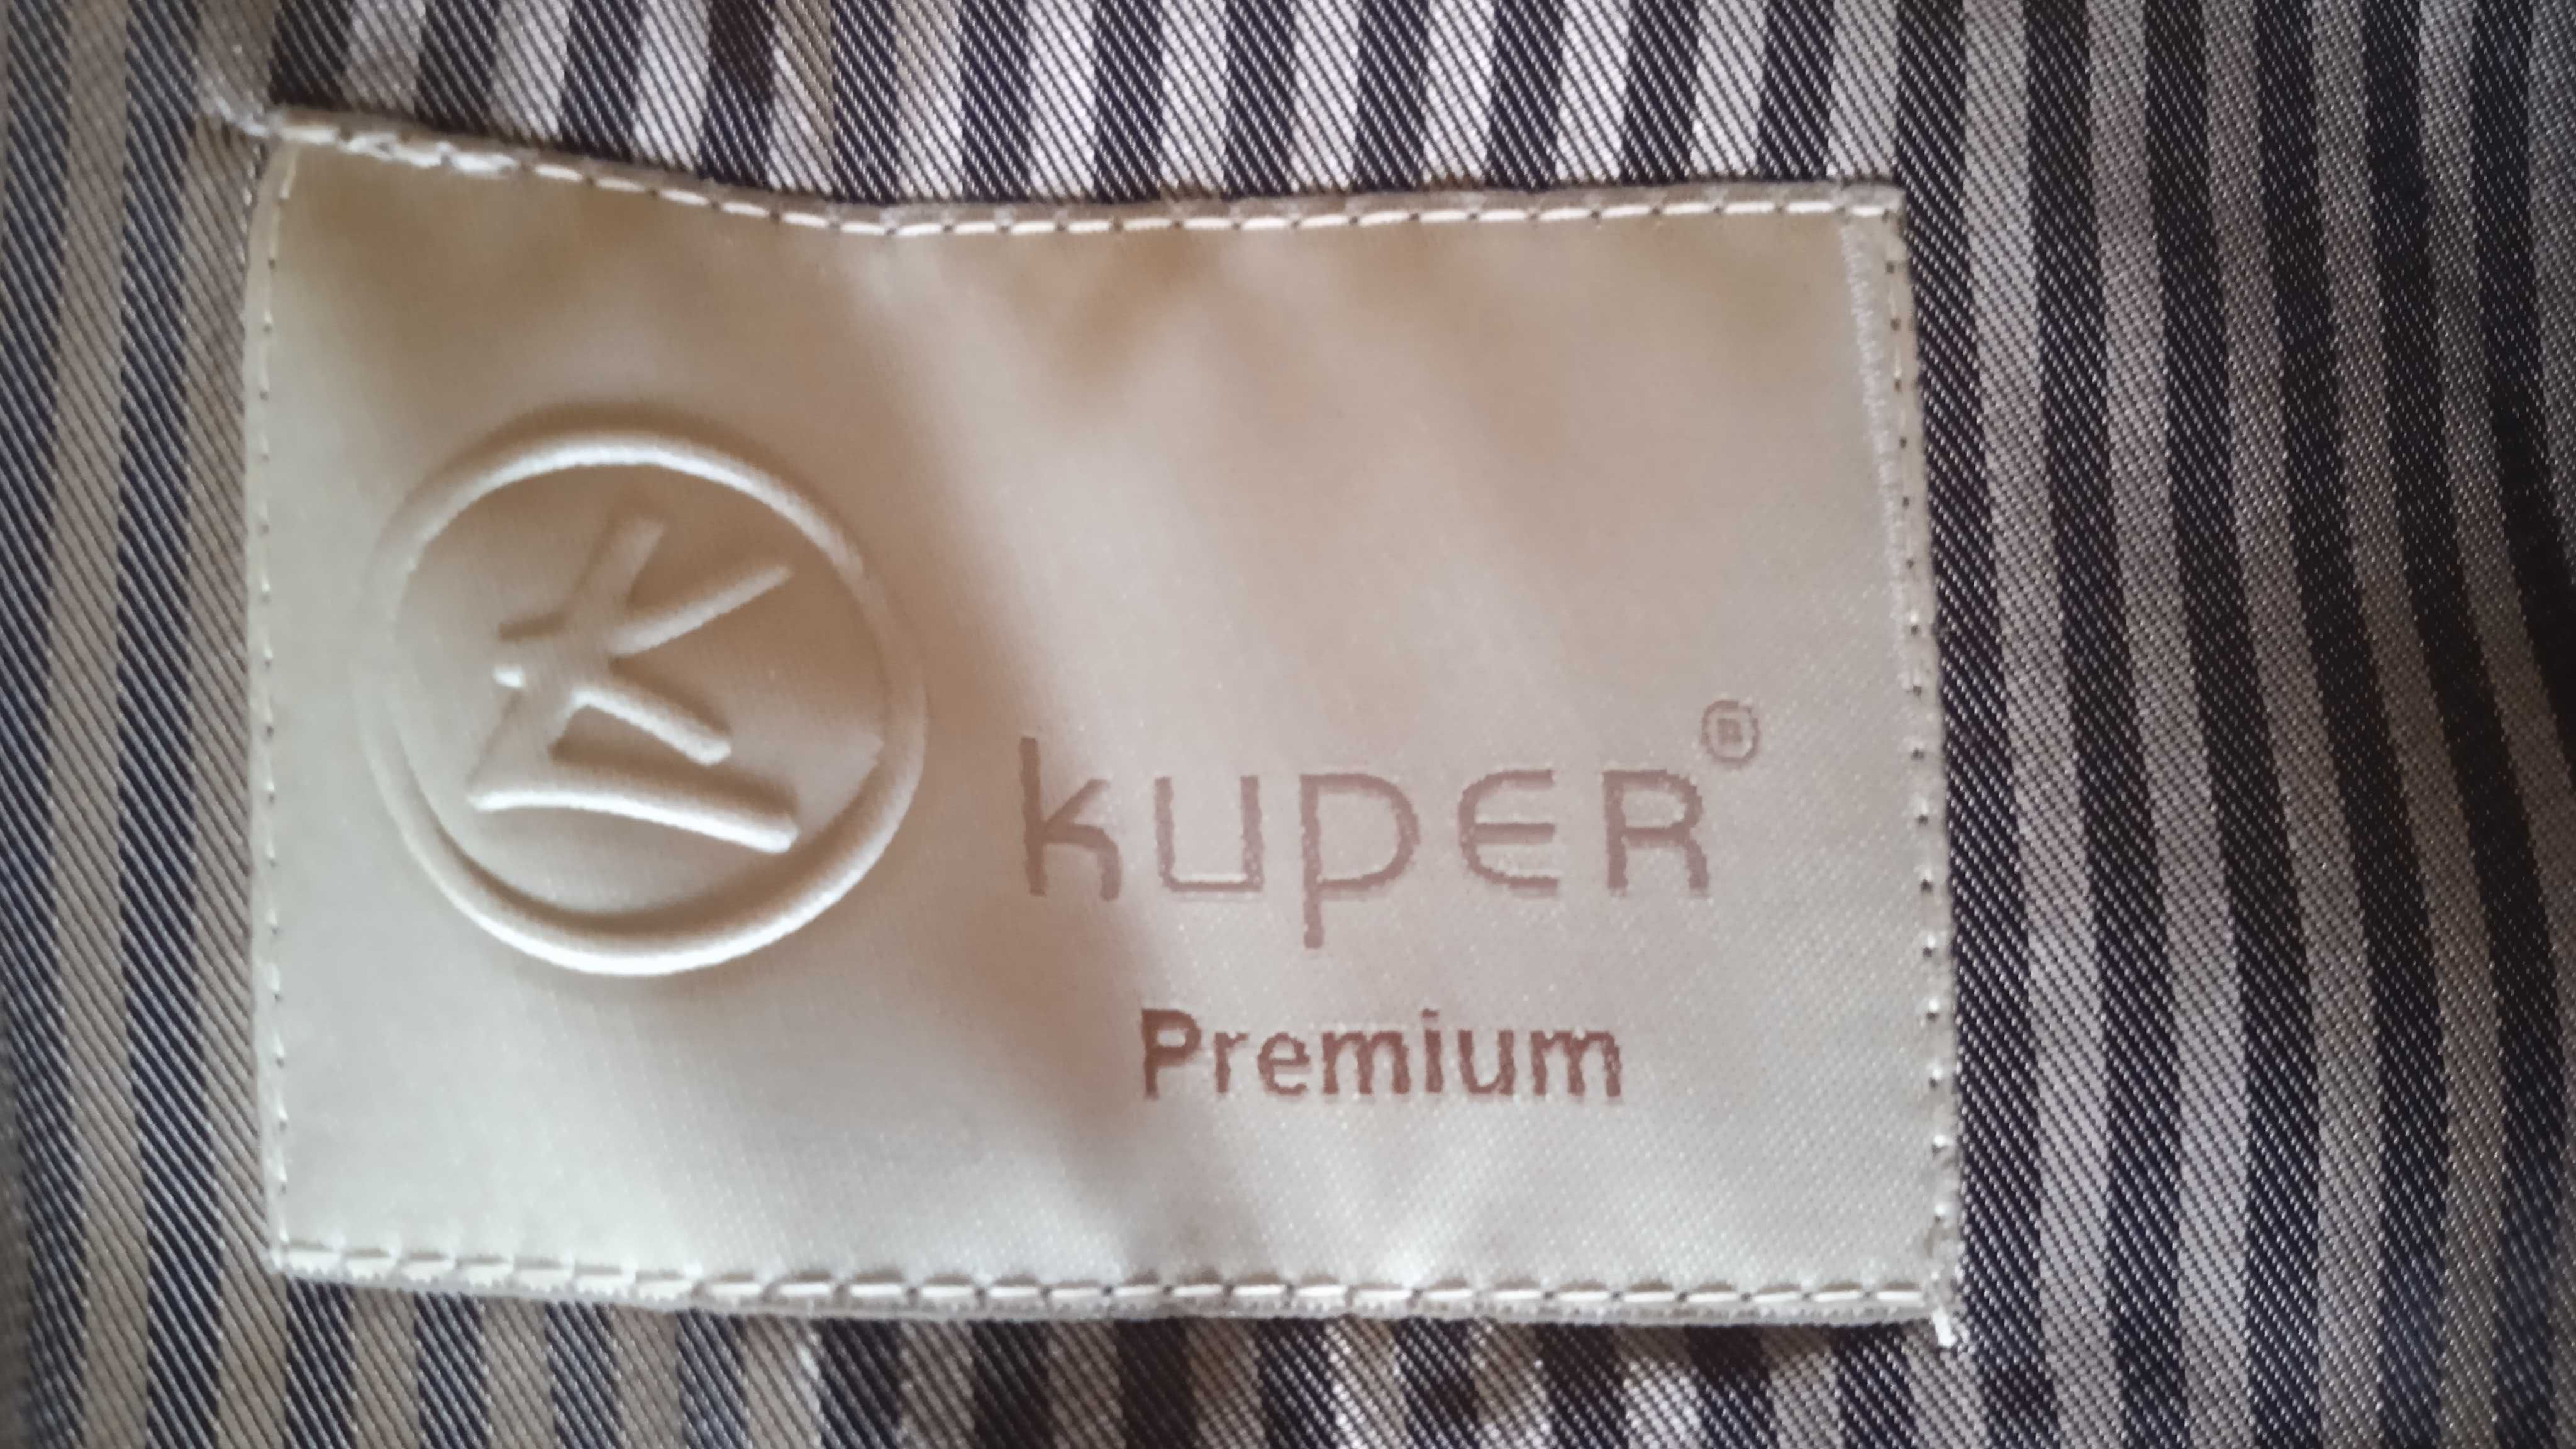 Плащ мужской Kuper. Premium.